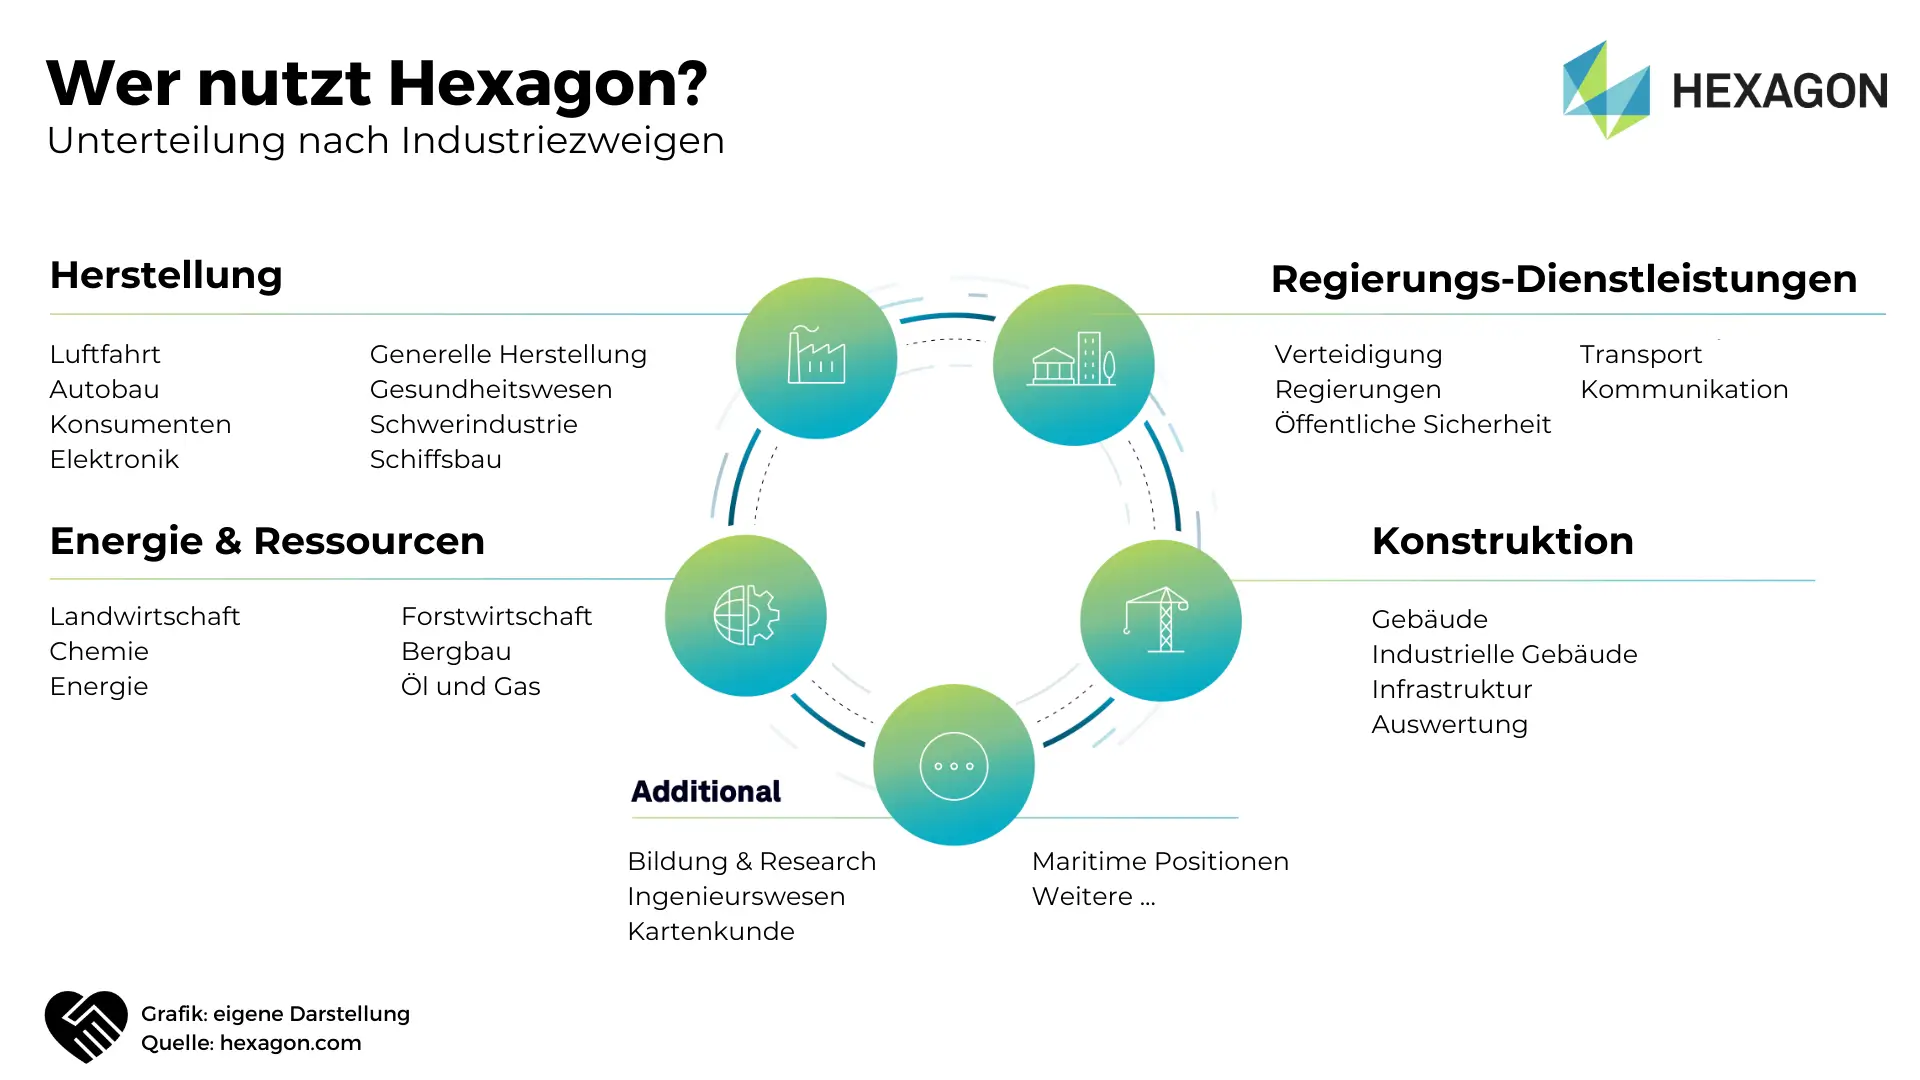 Hexagon Aktie Analyse - Innovation aus Schweden